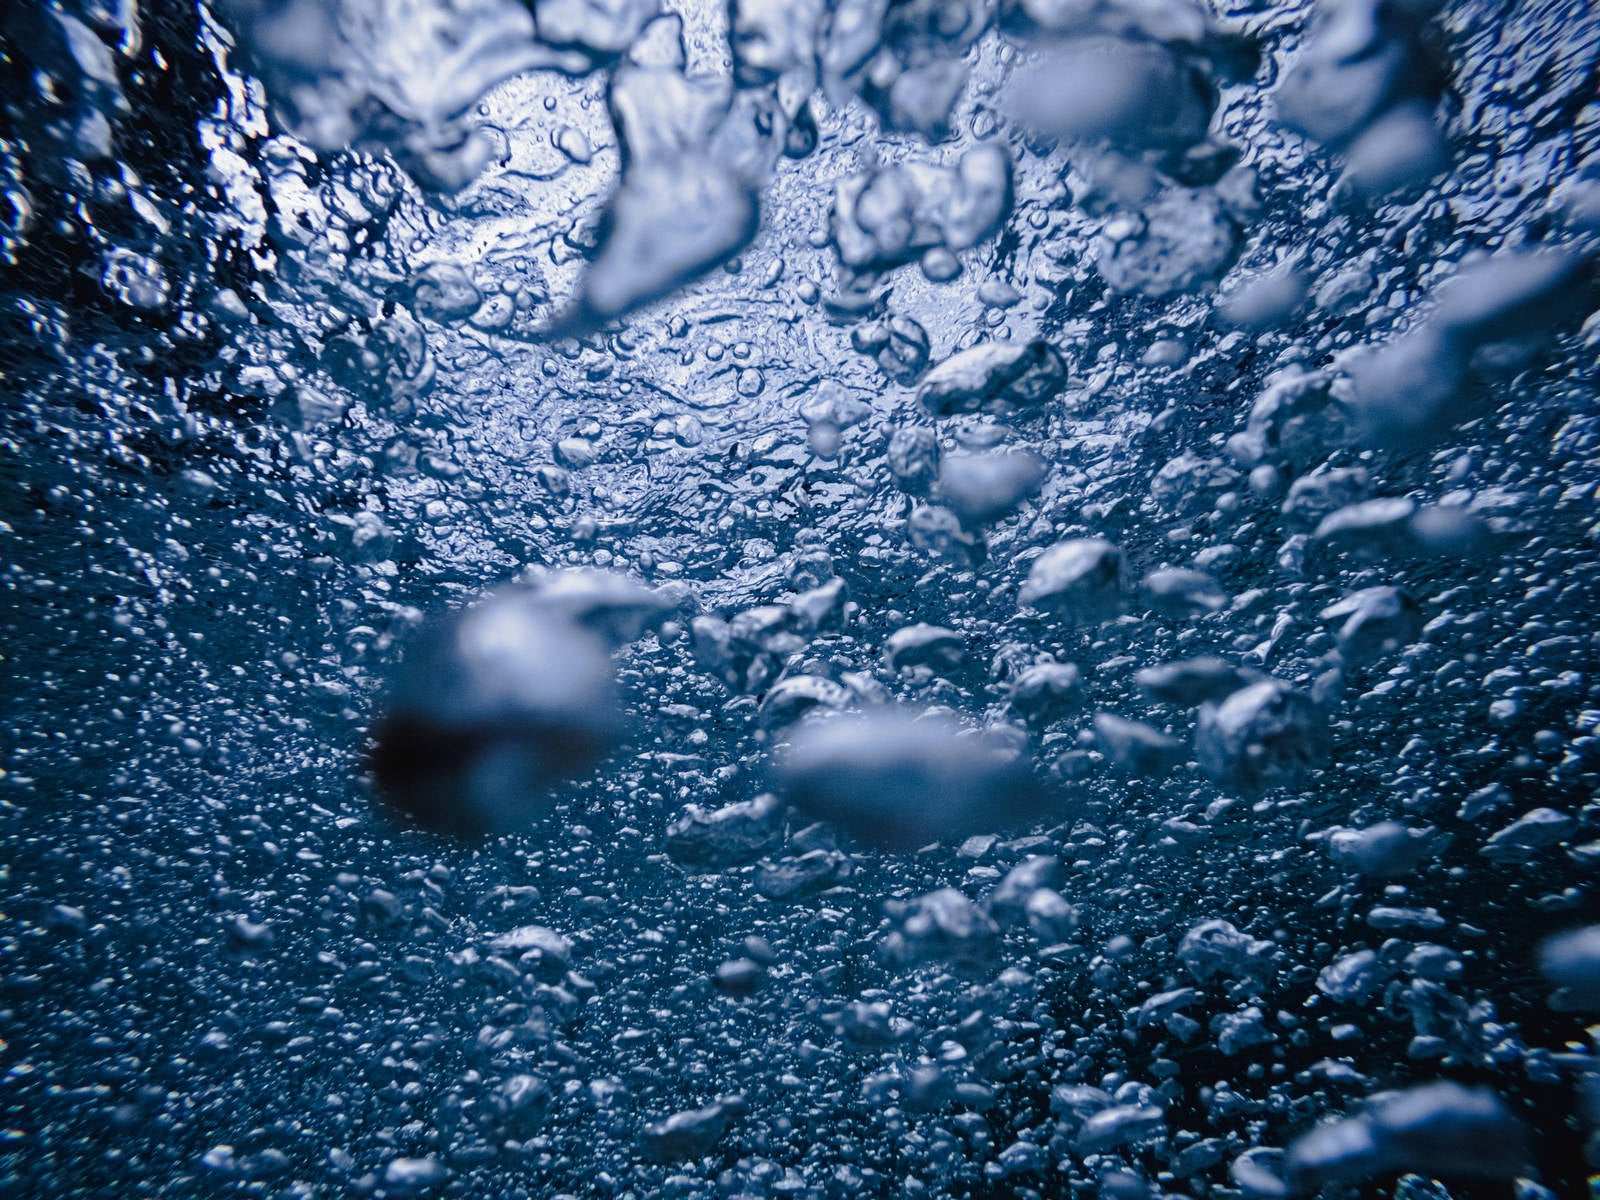 「気泡で溢れる水中のテクスチャー」の写真